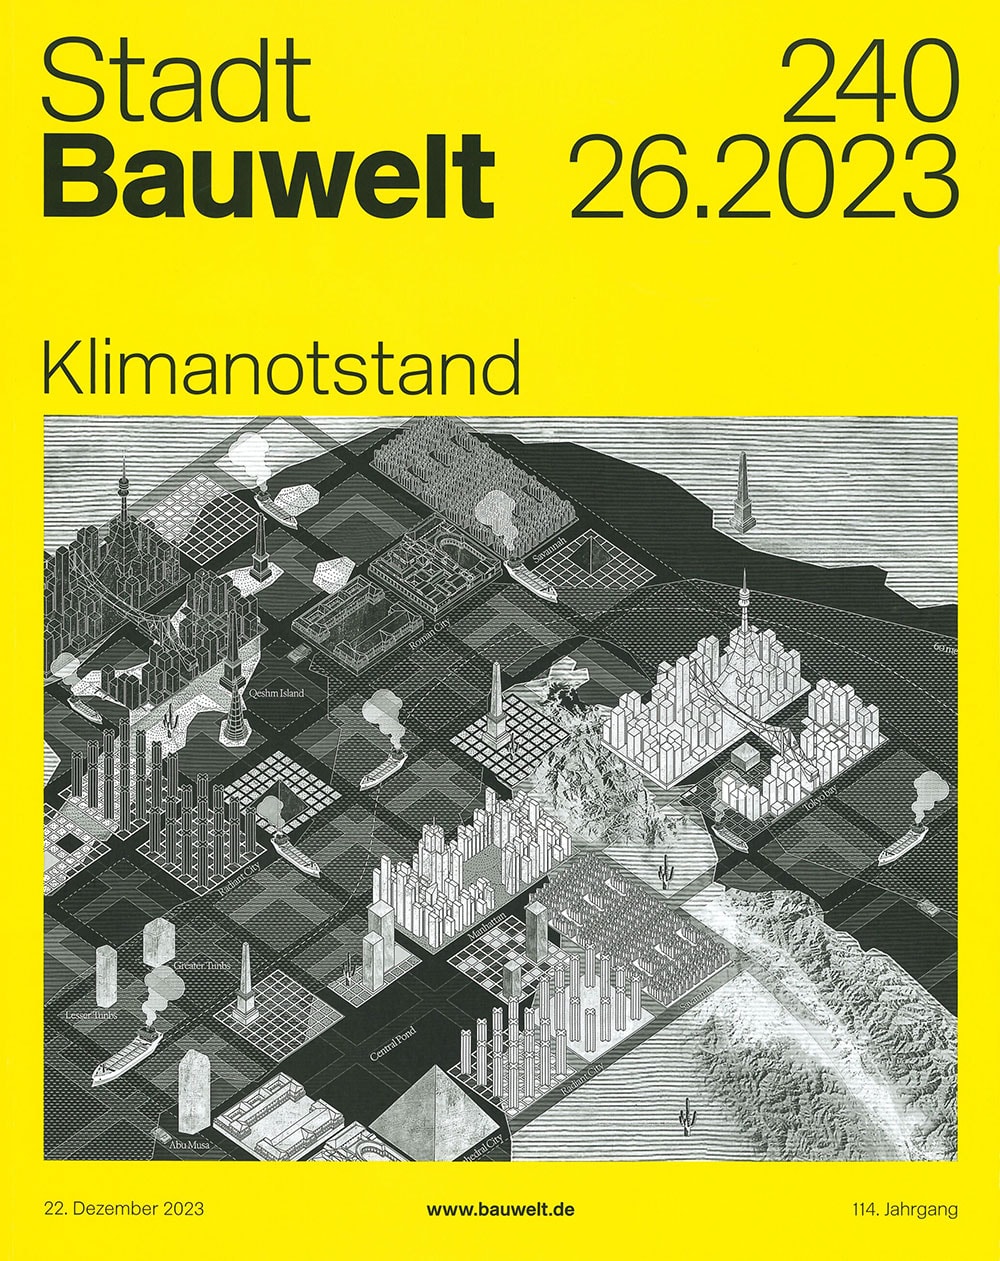 Stadtbauwelt issue 240